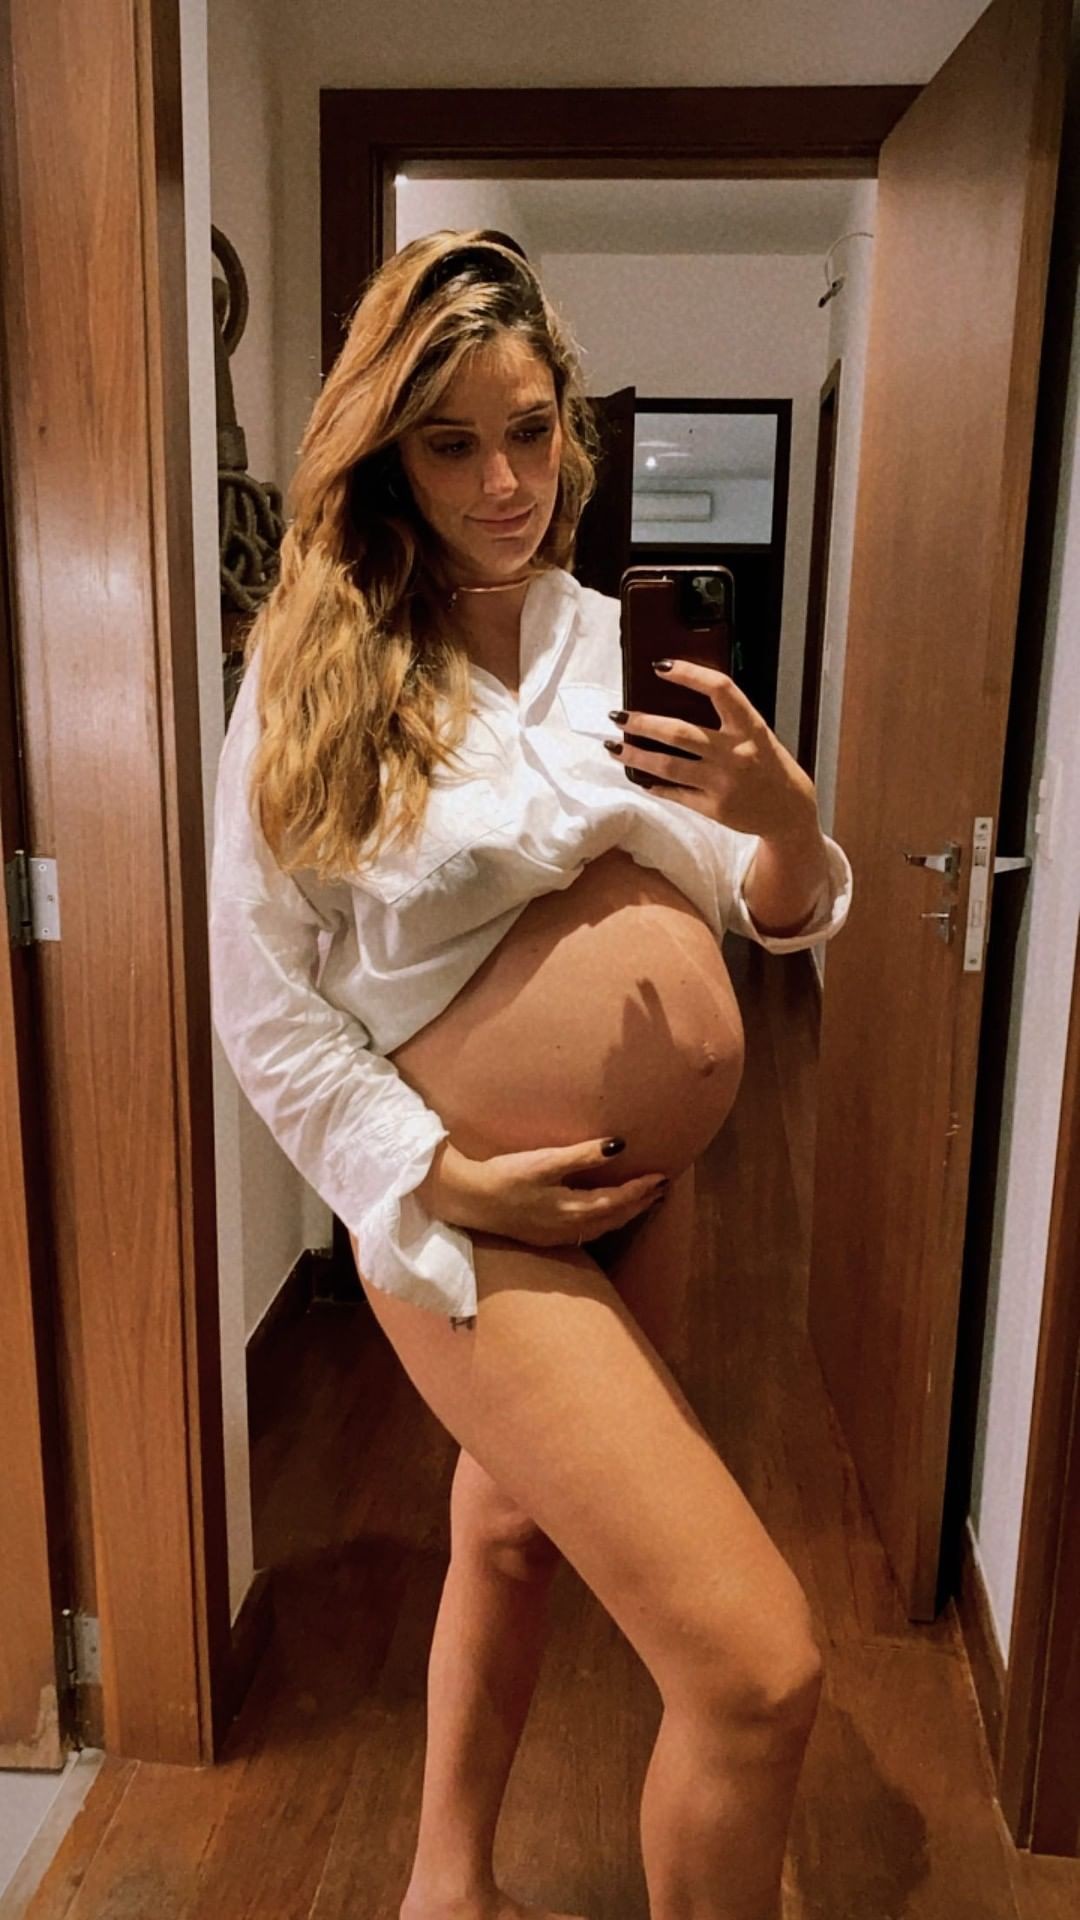 Rafa Brites mostra barrigão da segunda gravidez (Foto: Reprodução/Instagram)